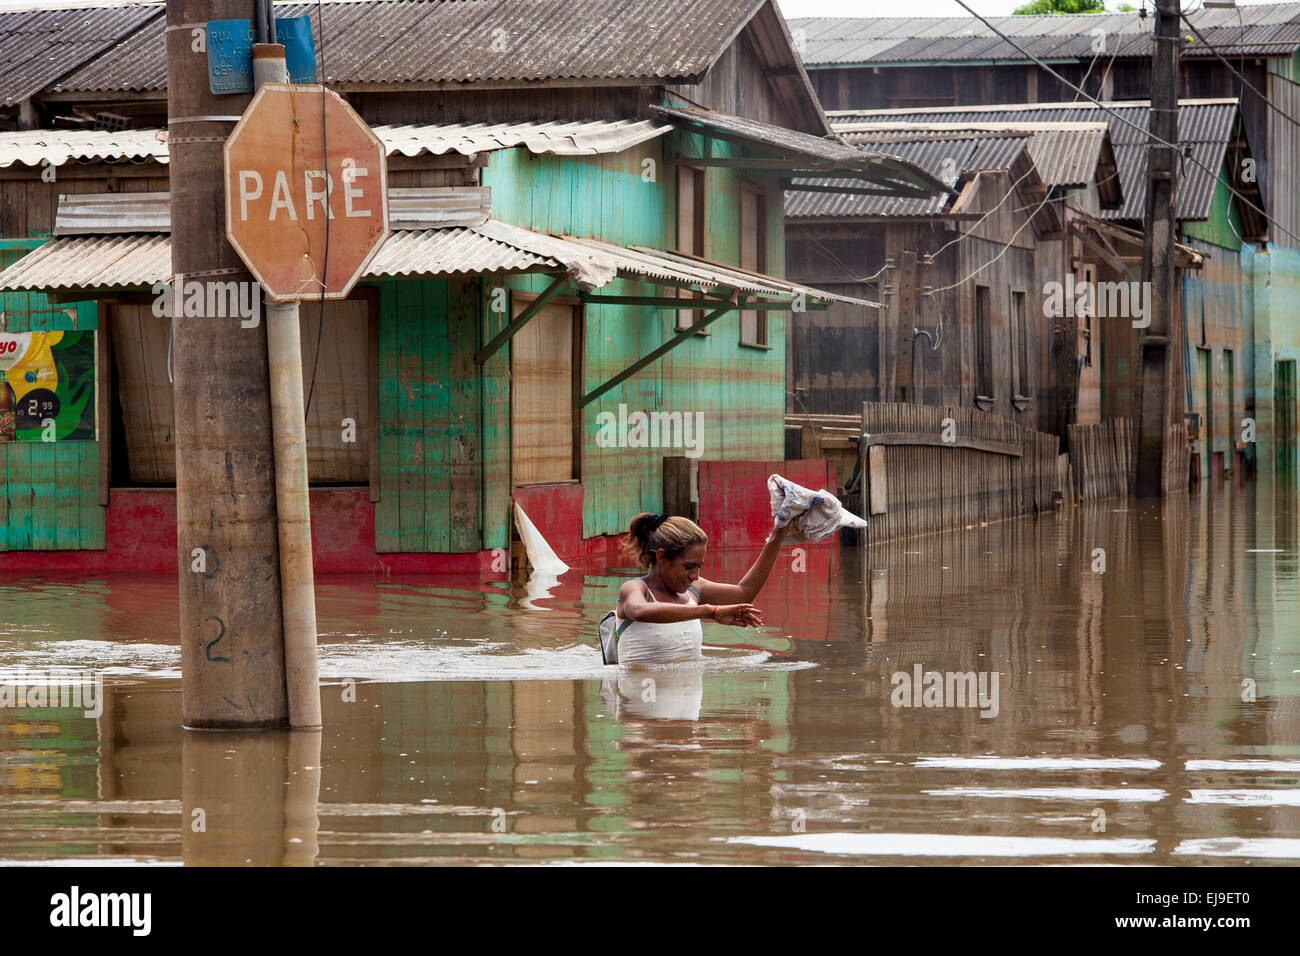 2015 Inondations en Amazonie brésilienne, femme traverse la rue inondée en face d'un panneau d'arrêt ( tape ) à Novo Triangulo, district de la ville de Rio Branco, l'état d'Acre. Les inondations ont touché des milliers de personnes dans l'Etat d'Acre, dans le nord du Brésil, depuis le 23 février 2015, lorsque certaines des rivières de l'état, en particulier l'Acre, la rivière a débordé. De plus fortes précipitations a forcé les niveaux de la rivière plus haut encore, et le 03 mars 2015, le gouvernement fédéral du Brésil a déclaré l'état d'urgence dans l'état d'Acre, où les conditions d'inondations situation a été décrite comme la pire en 132 ans. Banque D'Images